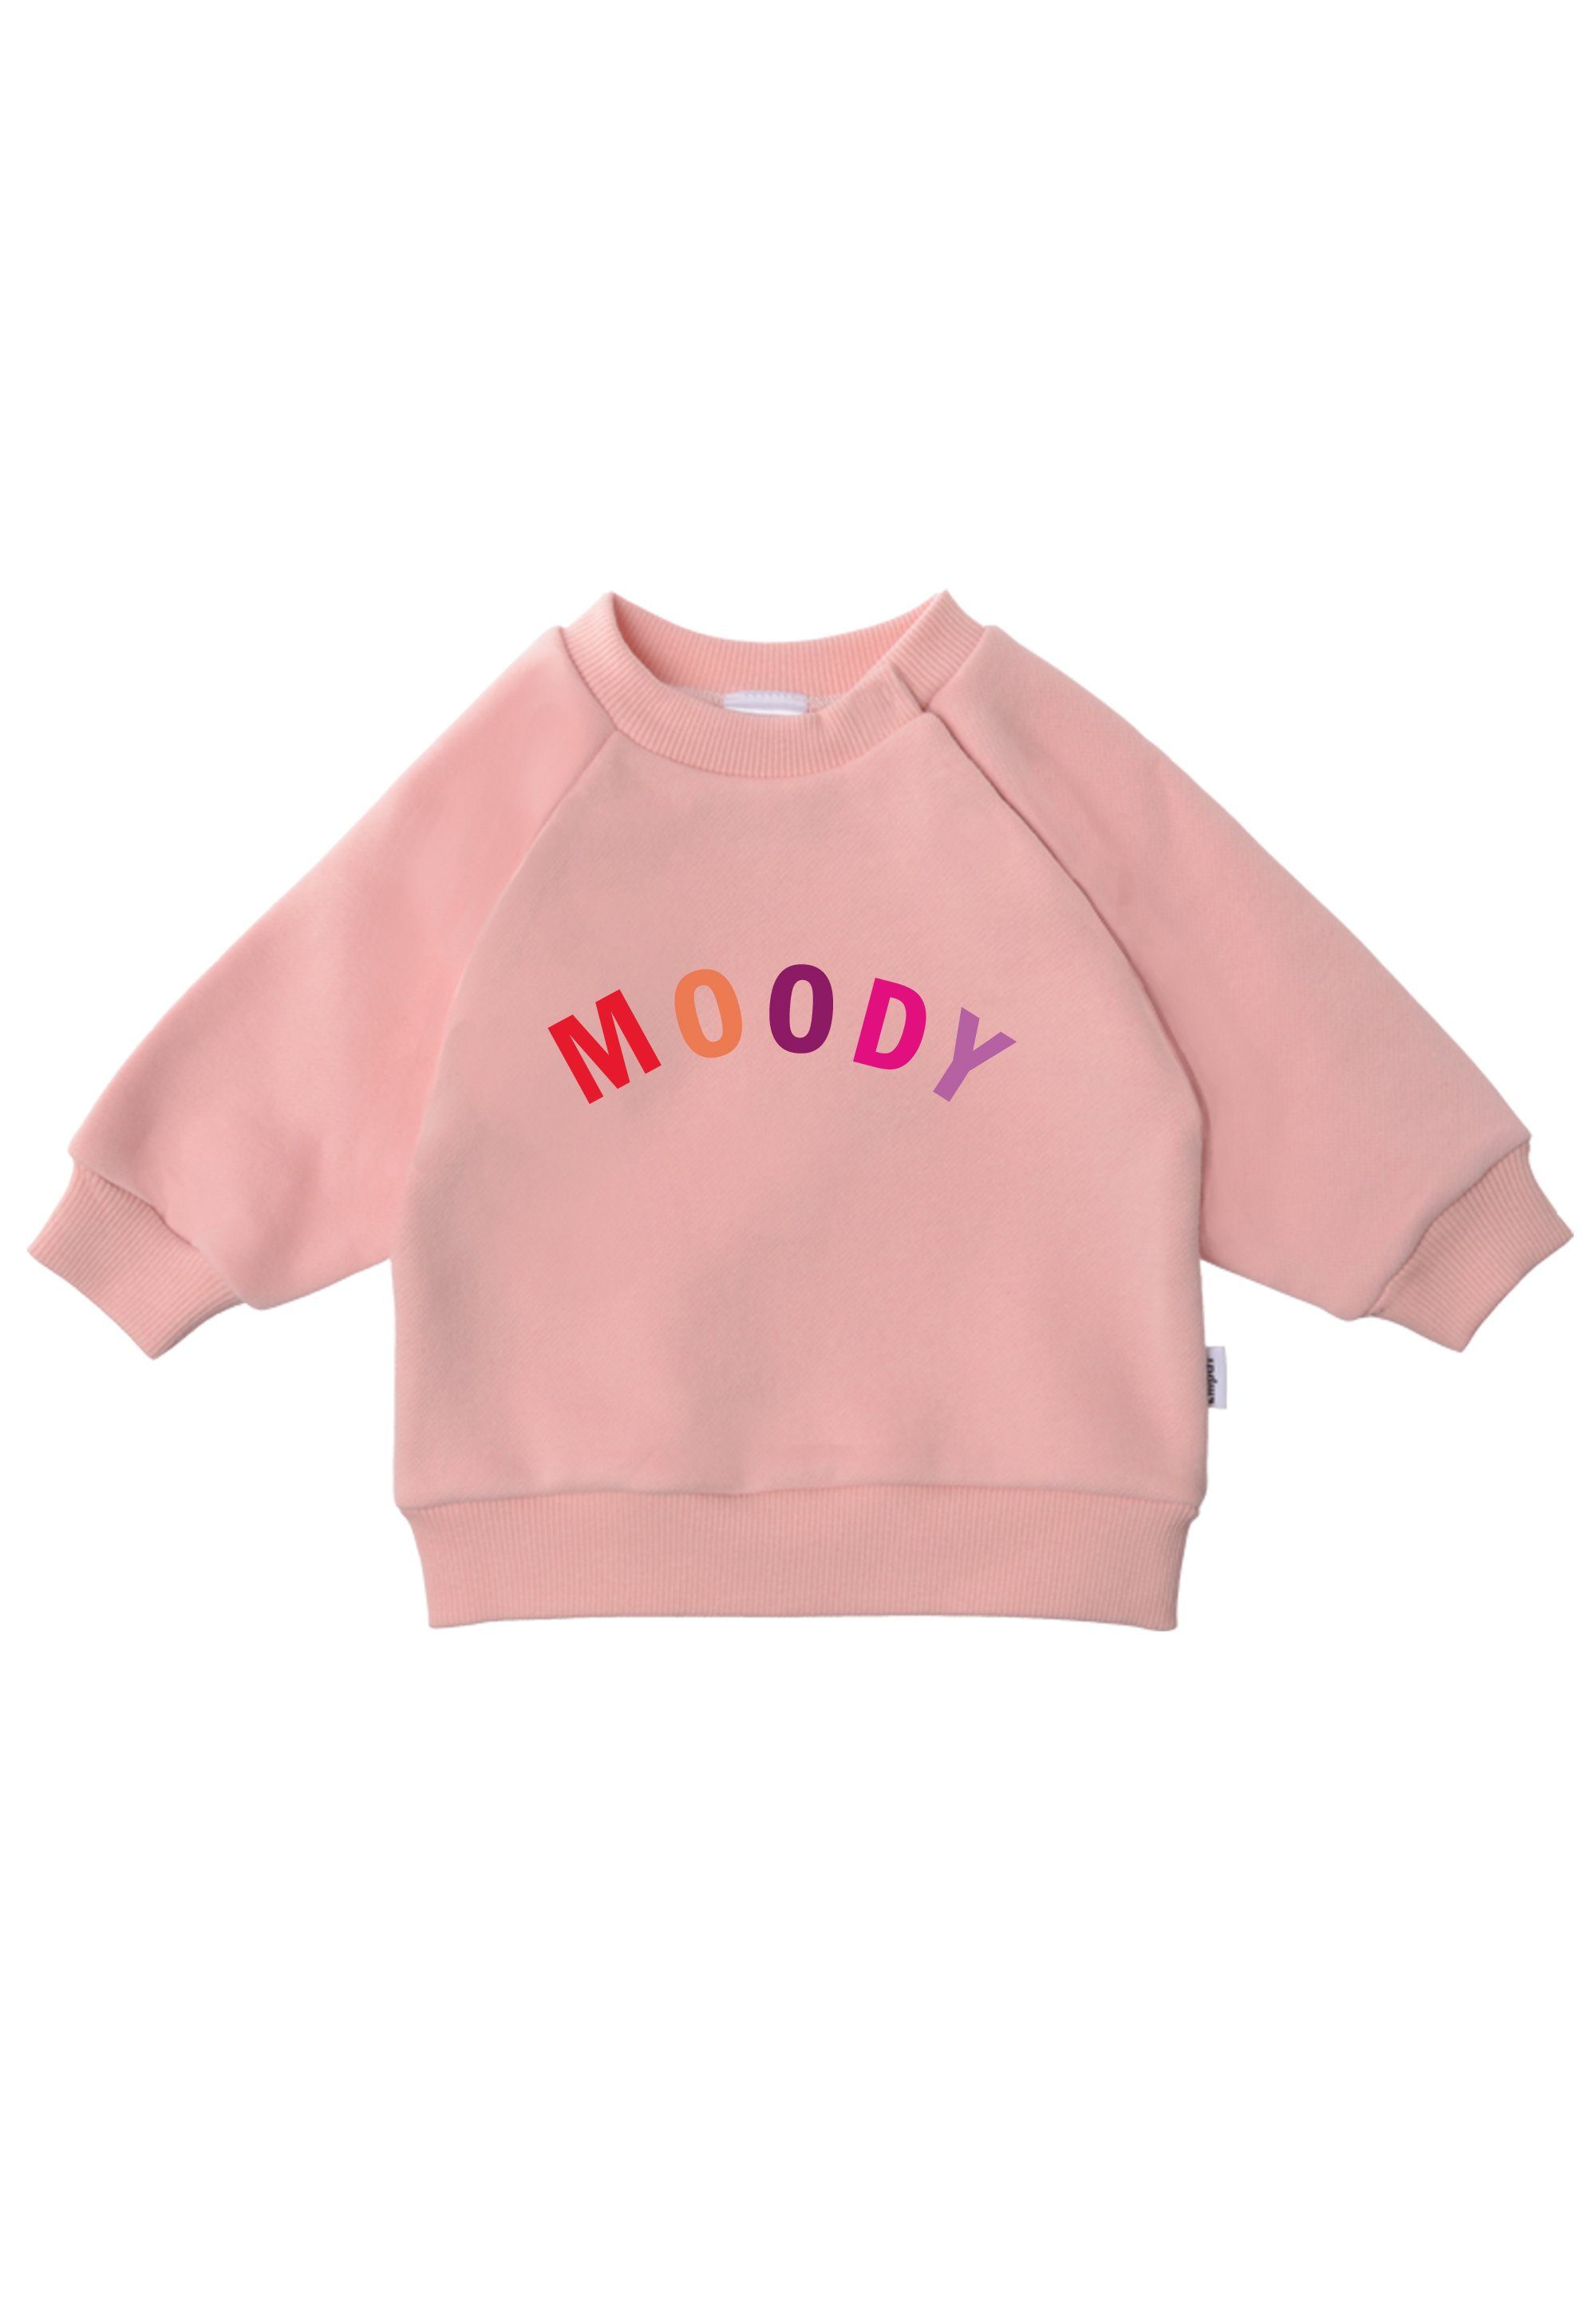 süßem Sweatshirt Aufdruck Moody Mit Liliput